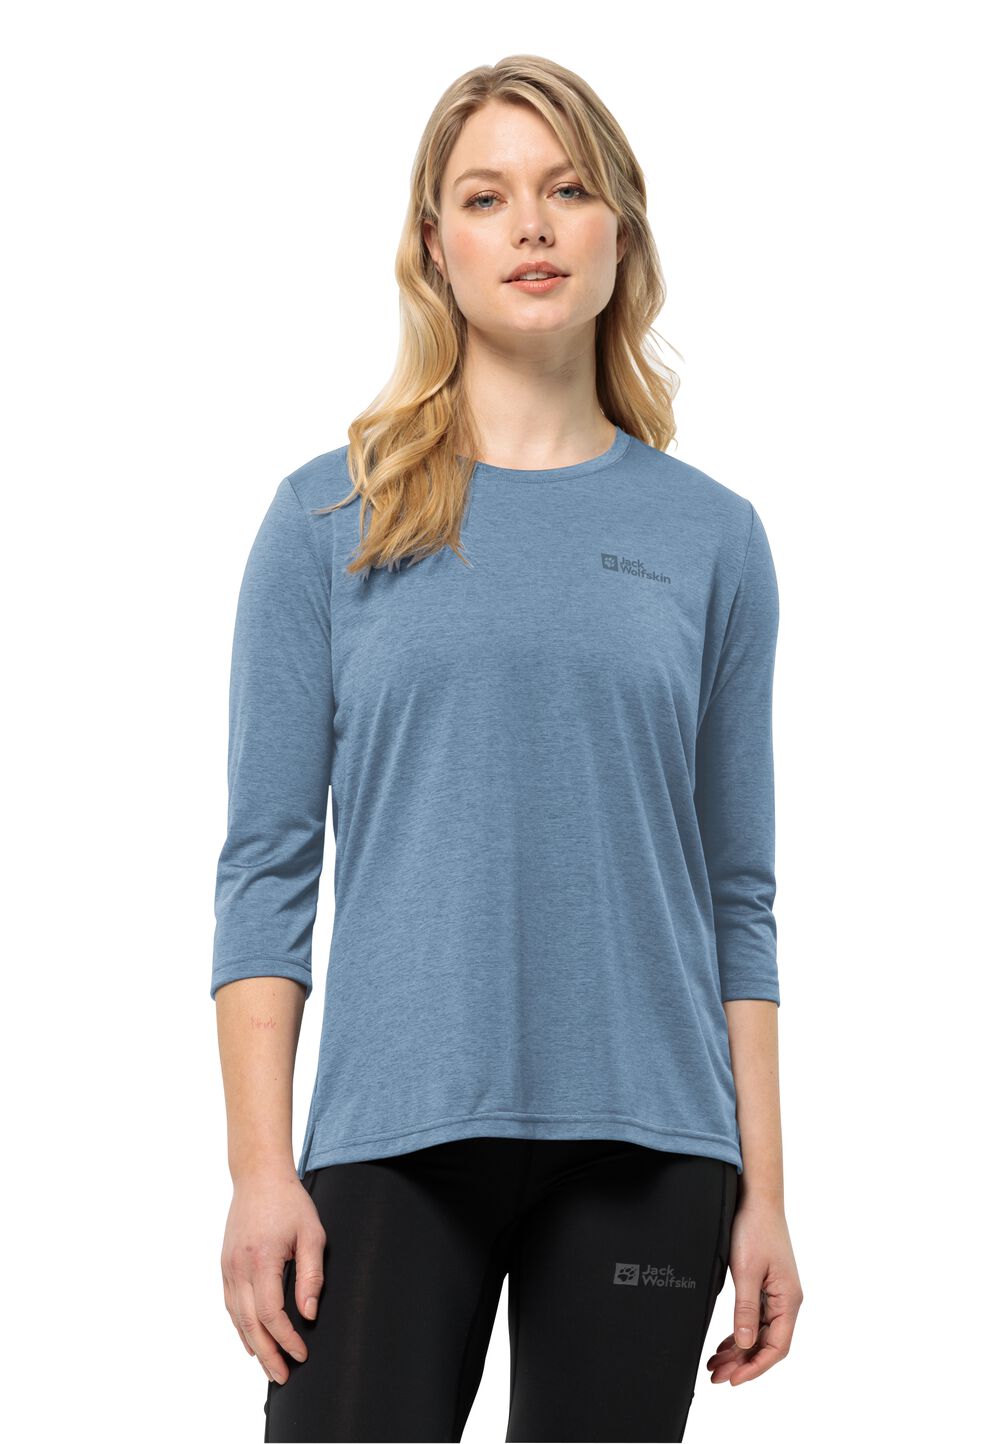 Jack Wolfskin Crosstrail 3 4 T-Shirt Women Functioneel shirt Dames XXL elemental blue elemental blue